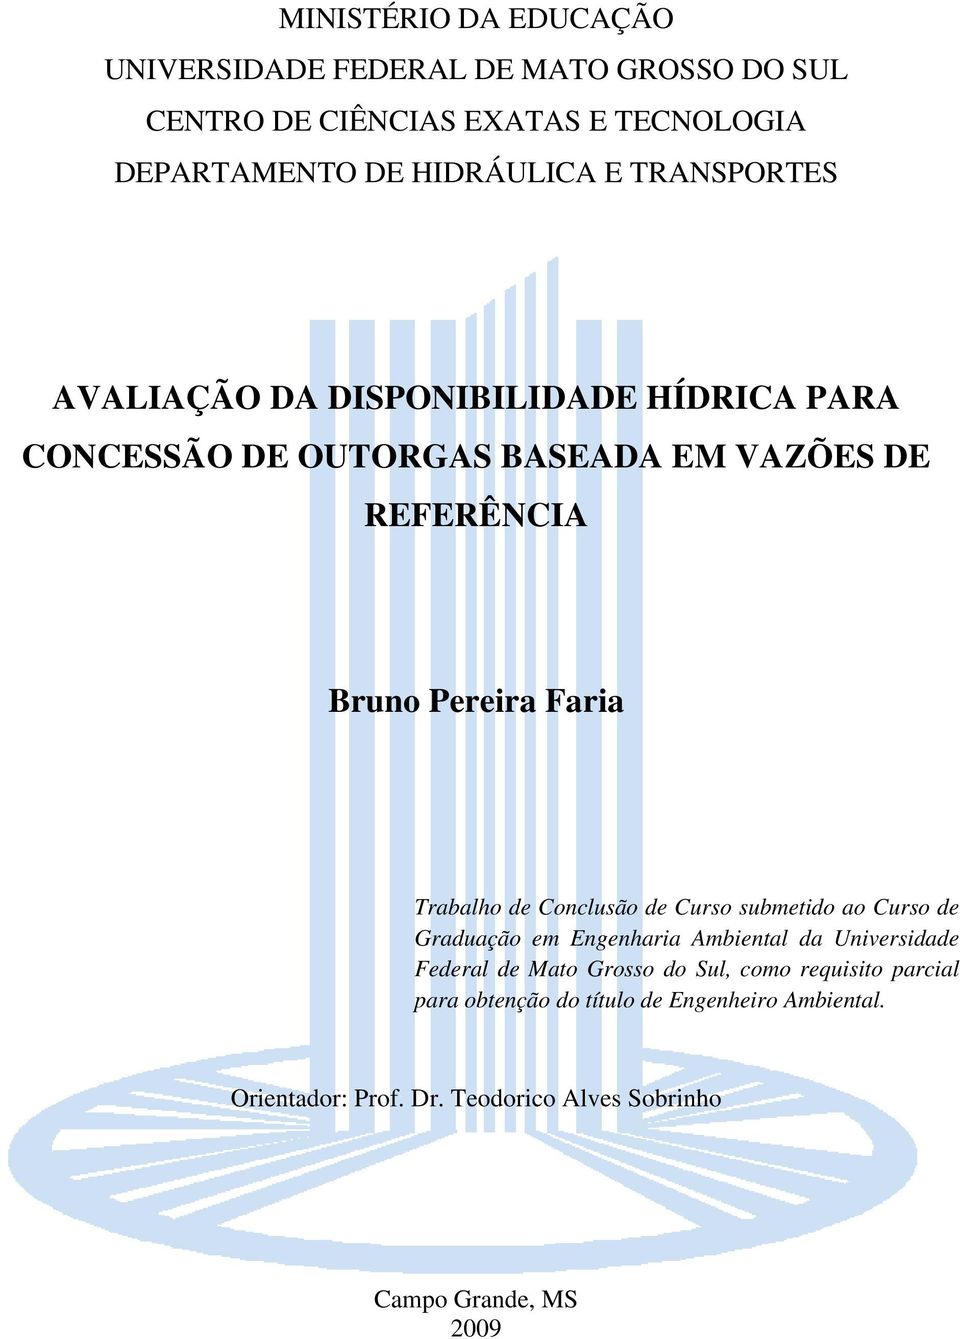 Trabalho de Conclusão de Curso submetido ao Curso de Graduação em Engenharia Ambiental da Universidade Federal de Mato Grosso do Sul,